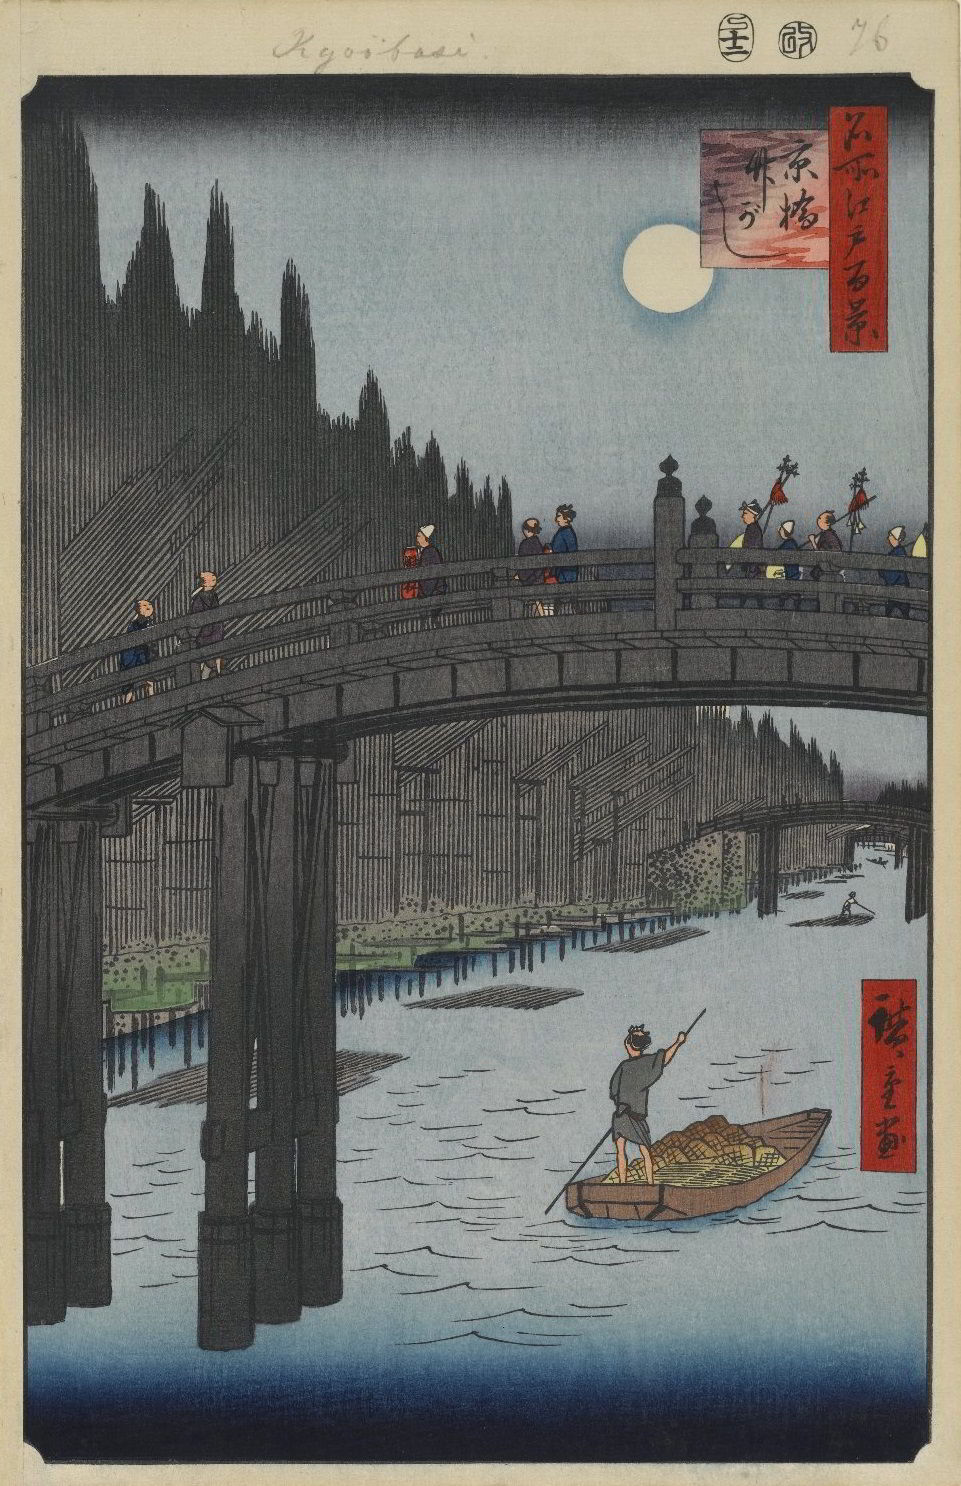 Kyobashi Bridge Takegashi Wharf by Utagawa Hiroshige